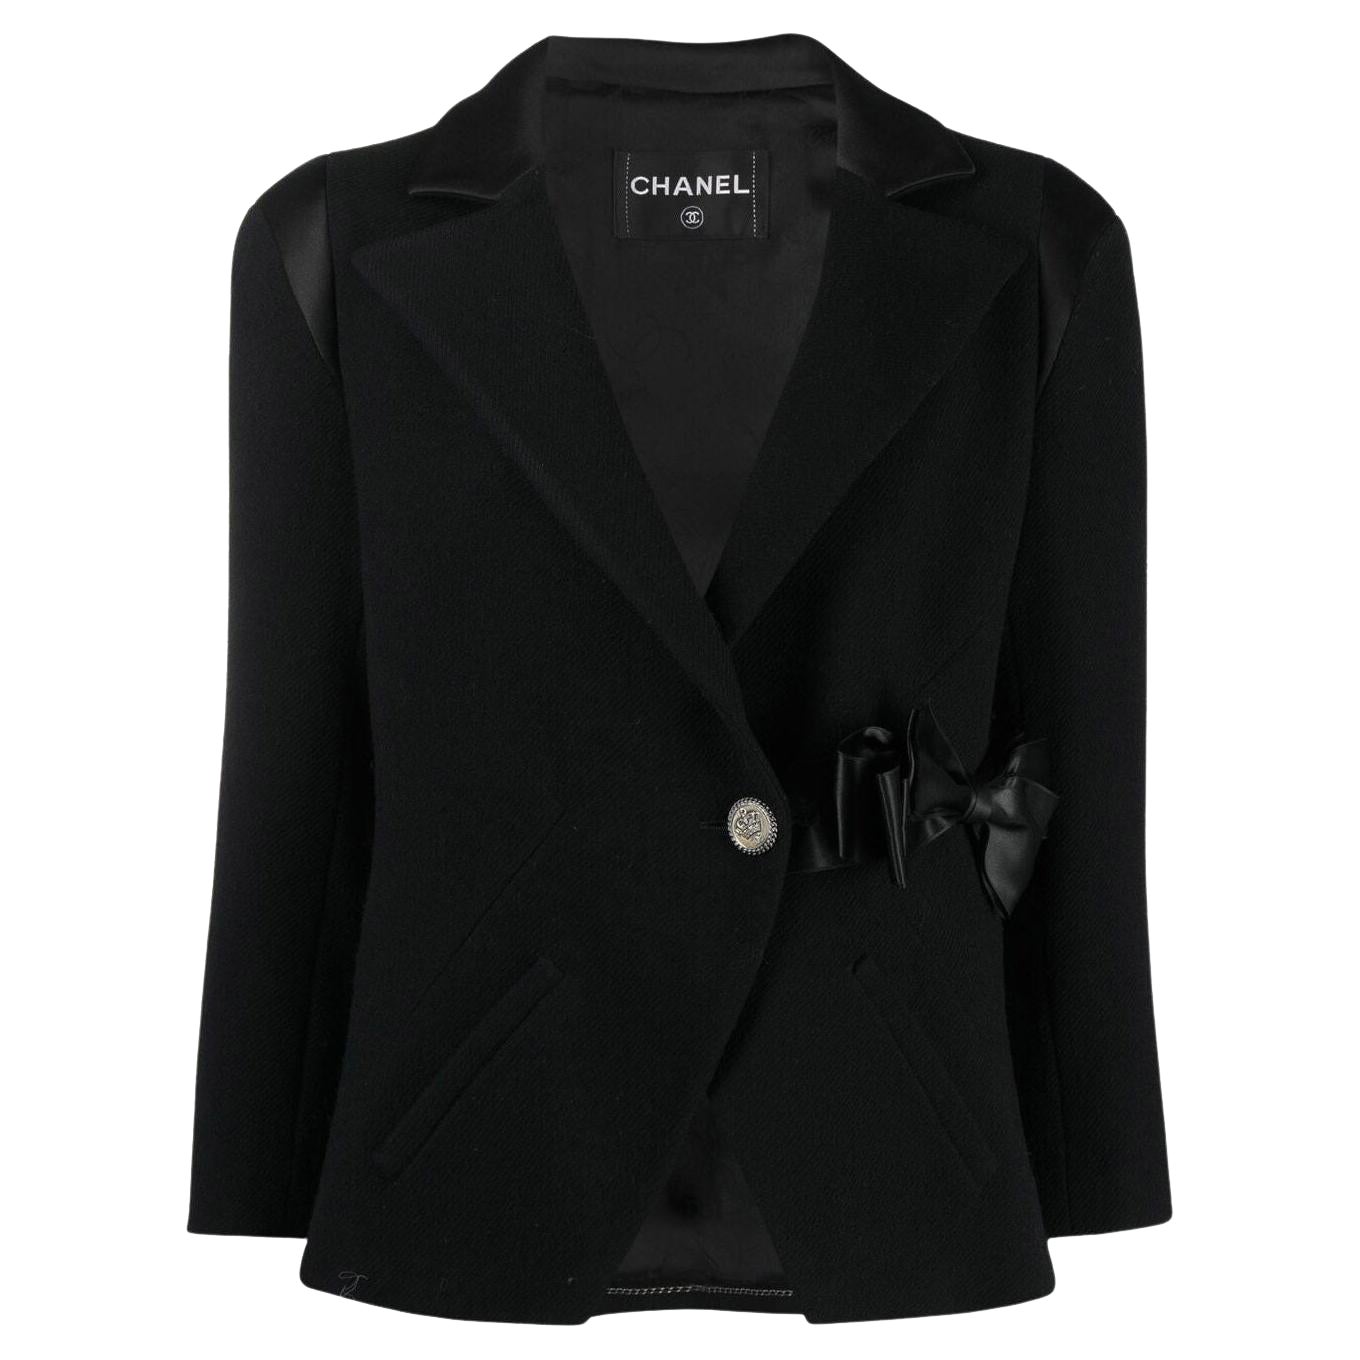 Chanel Paris / London Runway Black Tweed Jacket For Sale